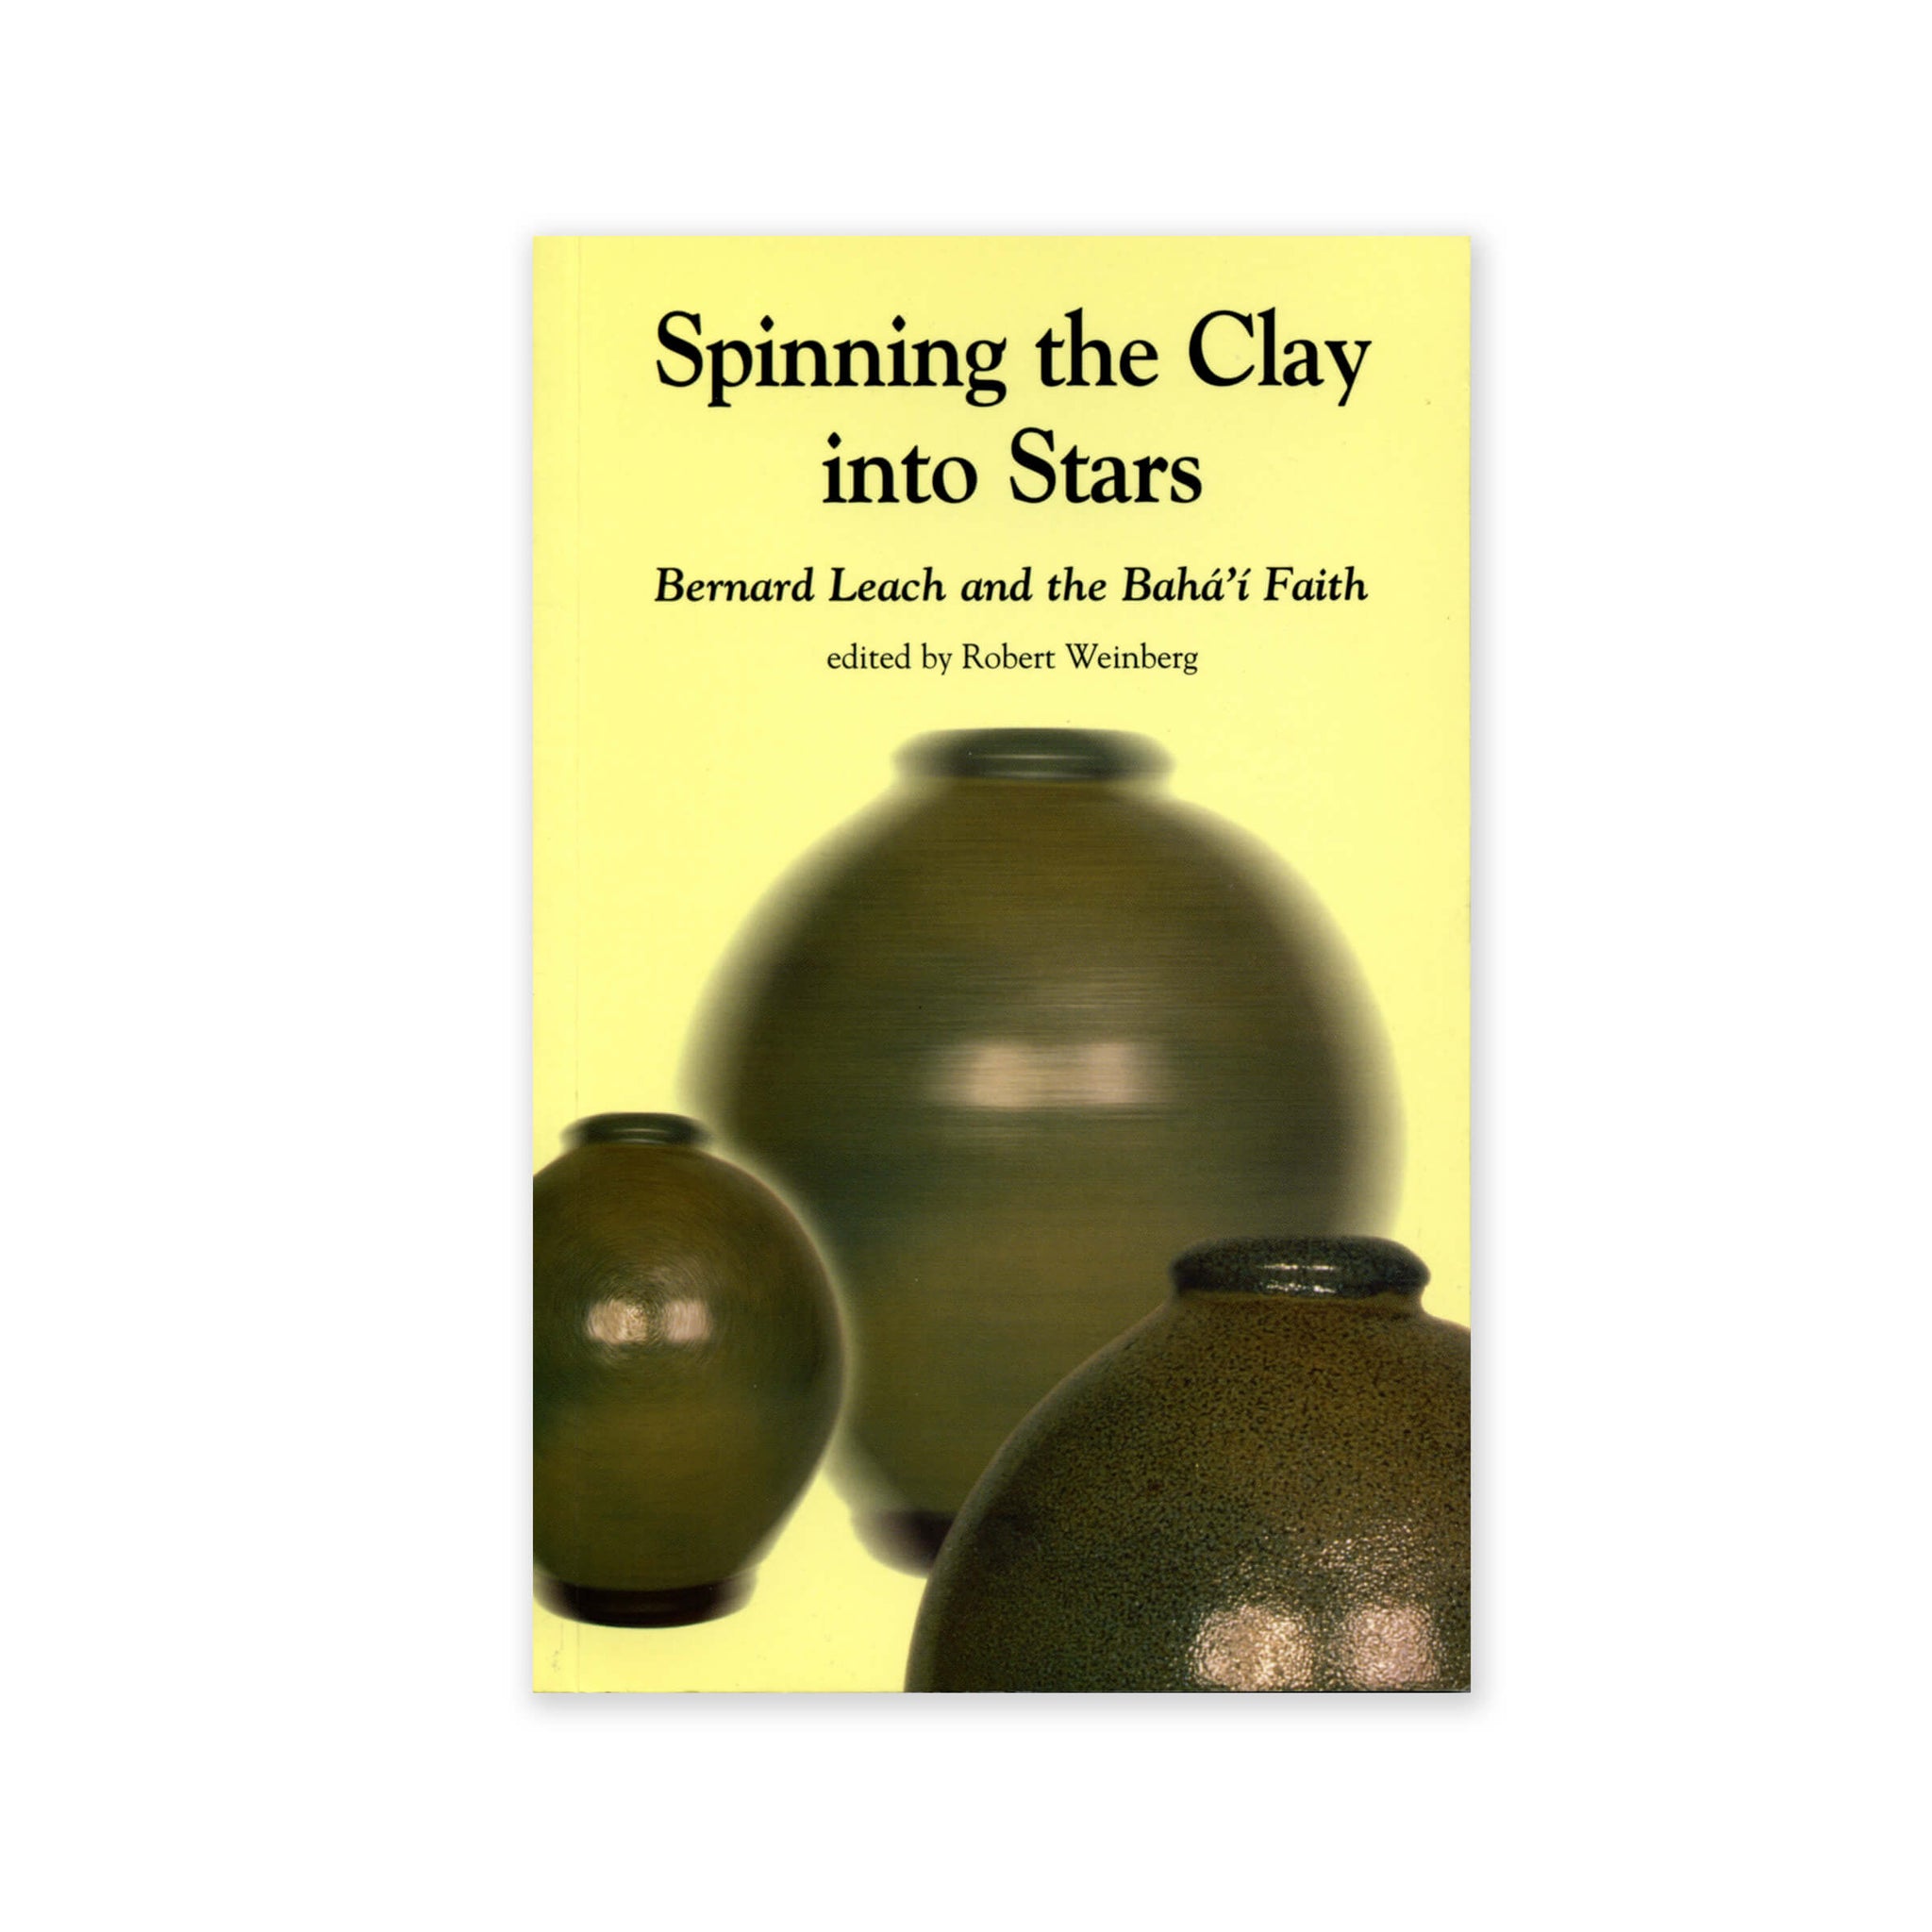 Spinning Clay into Stars - Bernard Leach and the Baha'i Faith